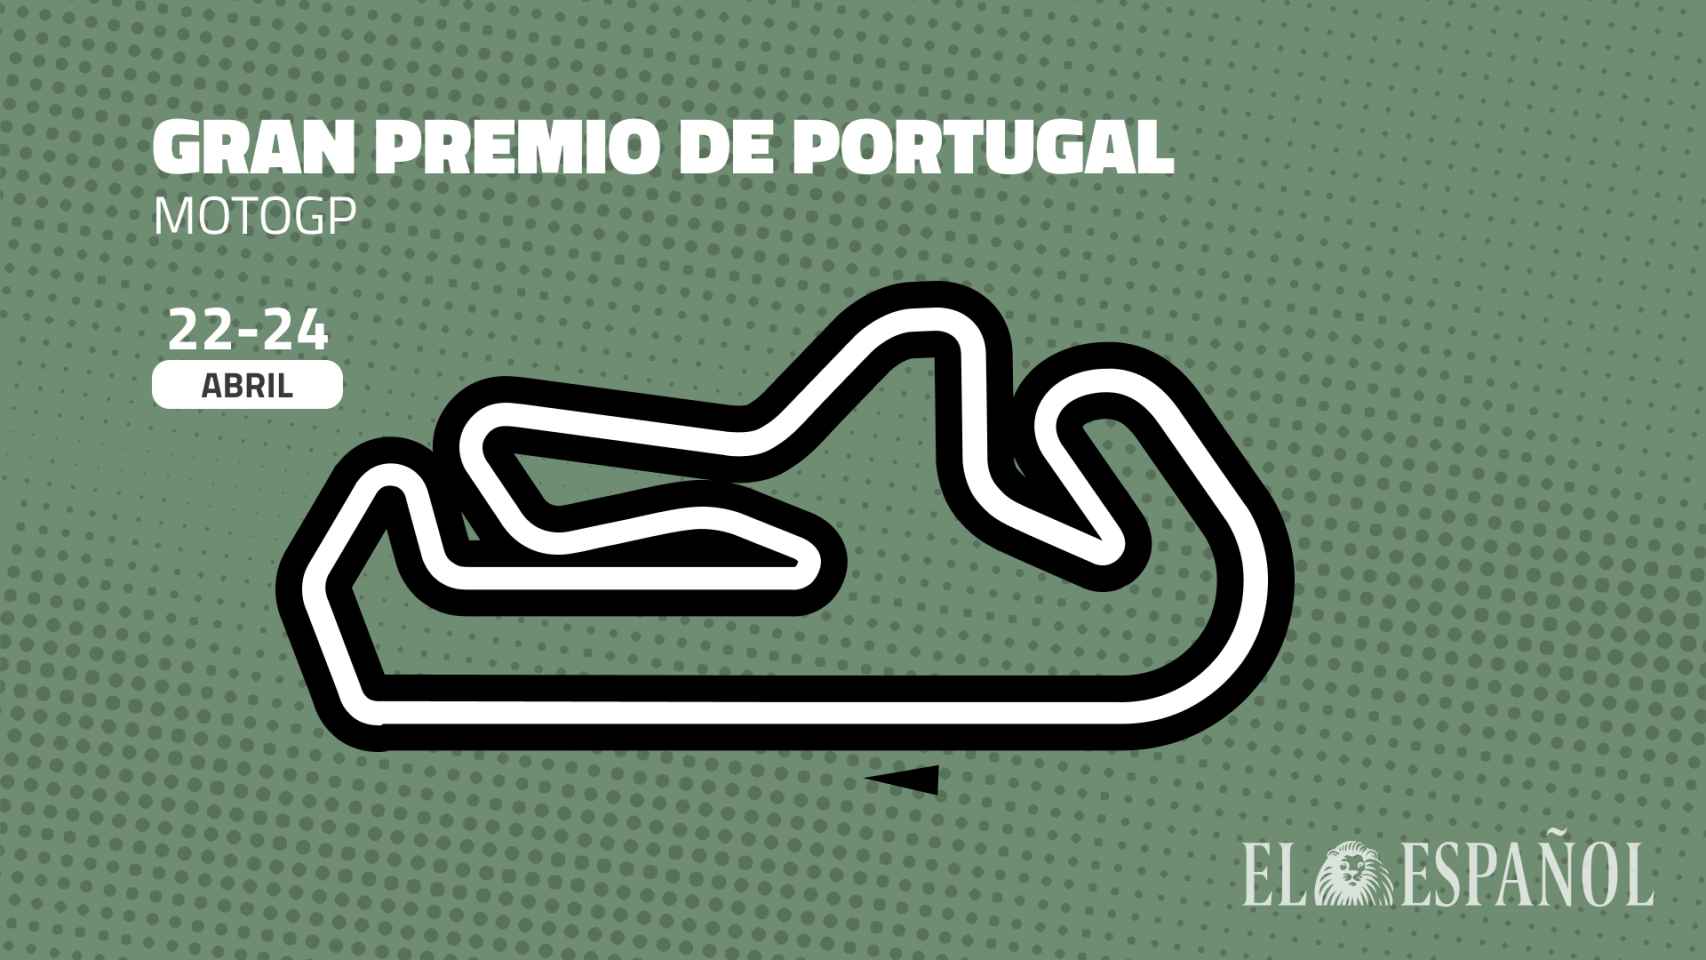 Gran Premio de Portugal de MotoGP: fecha, hora y cómo verlo